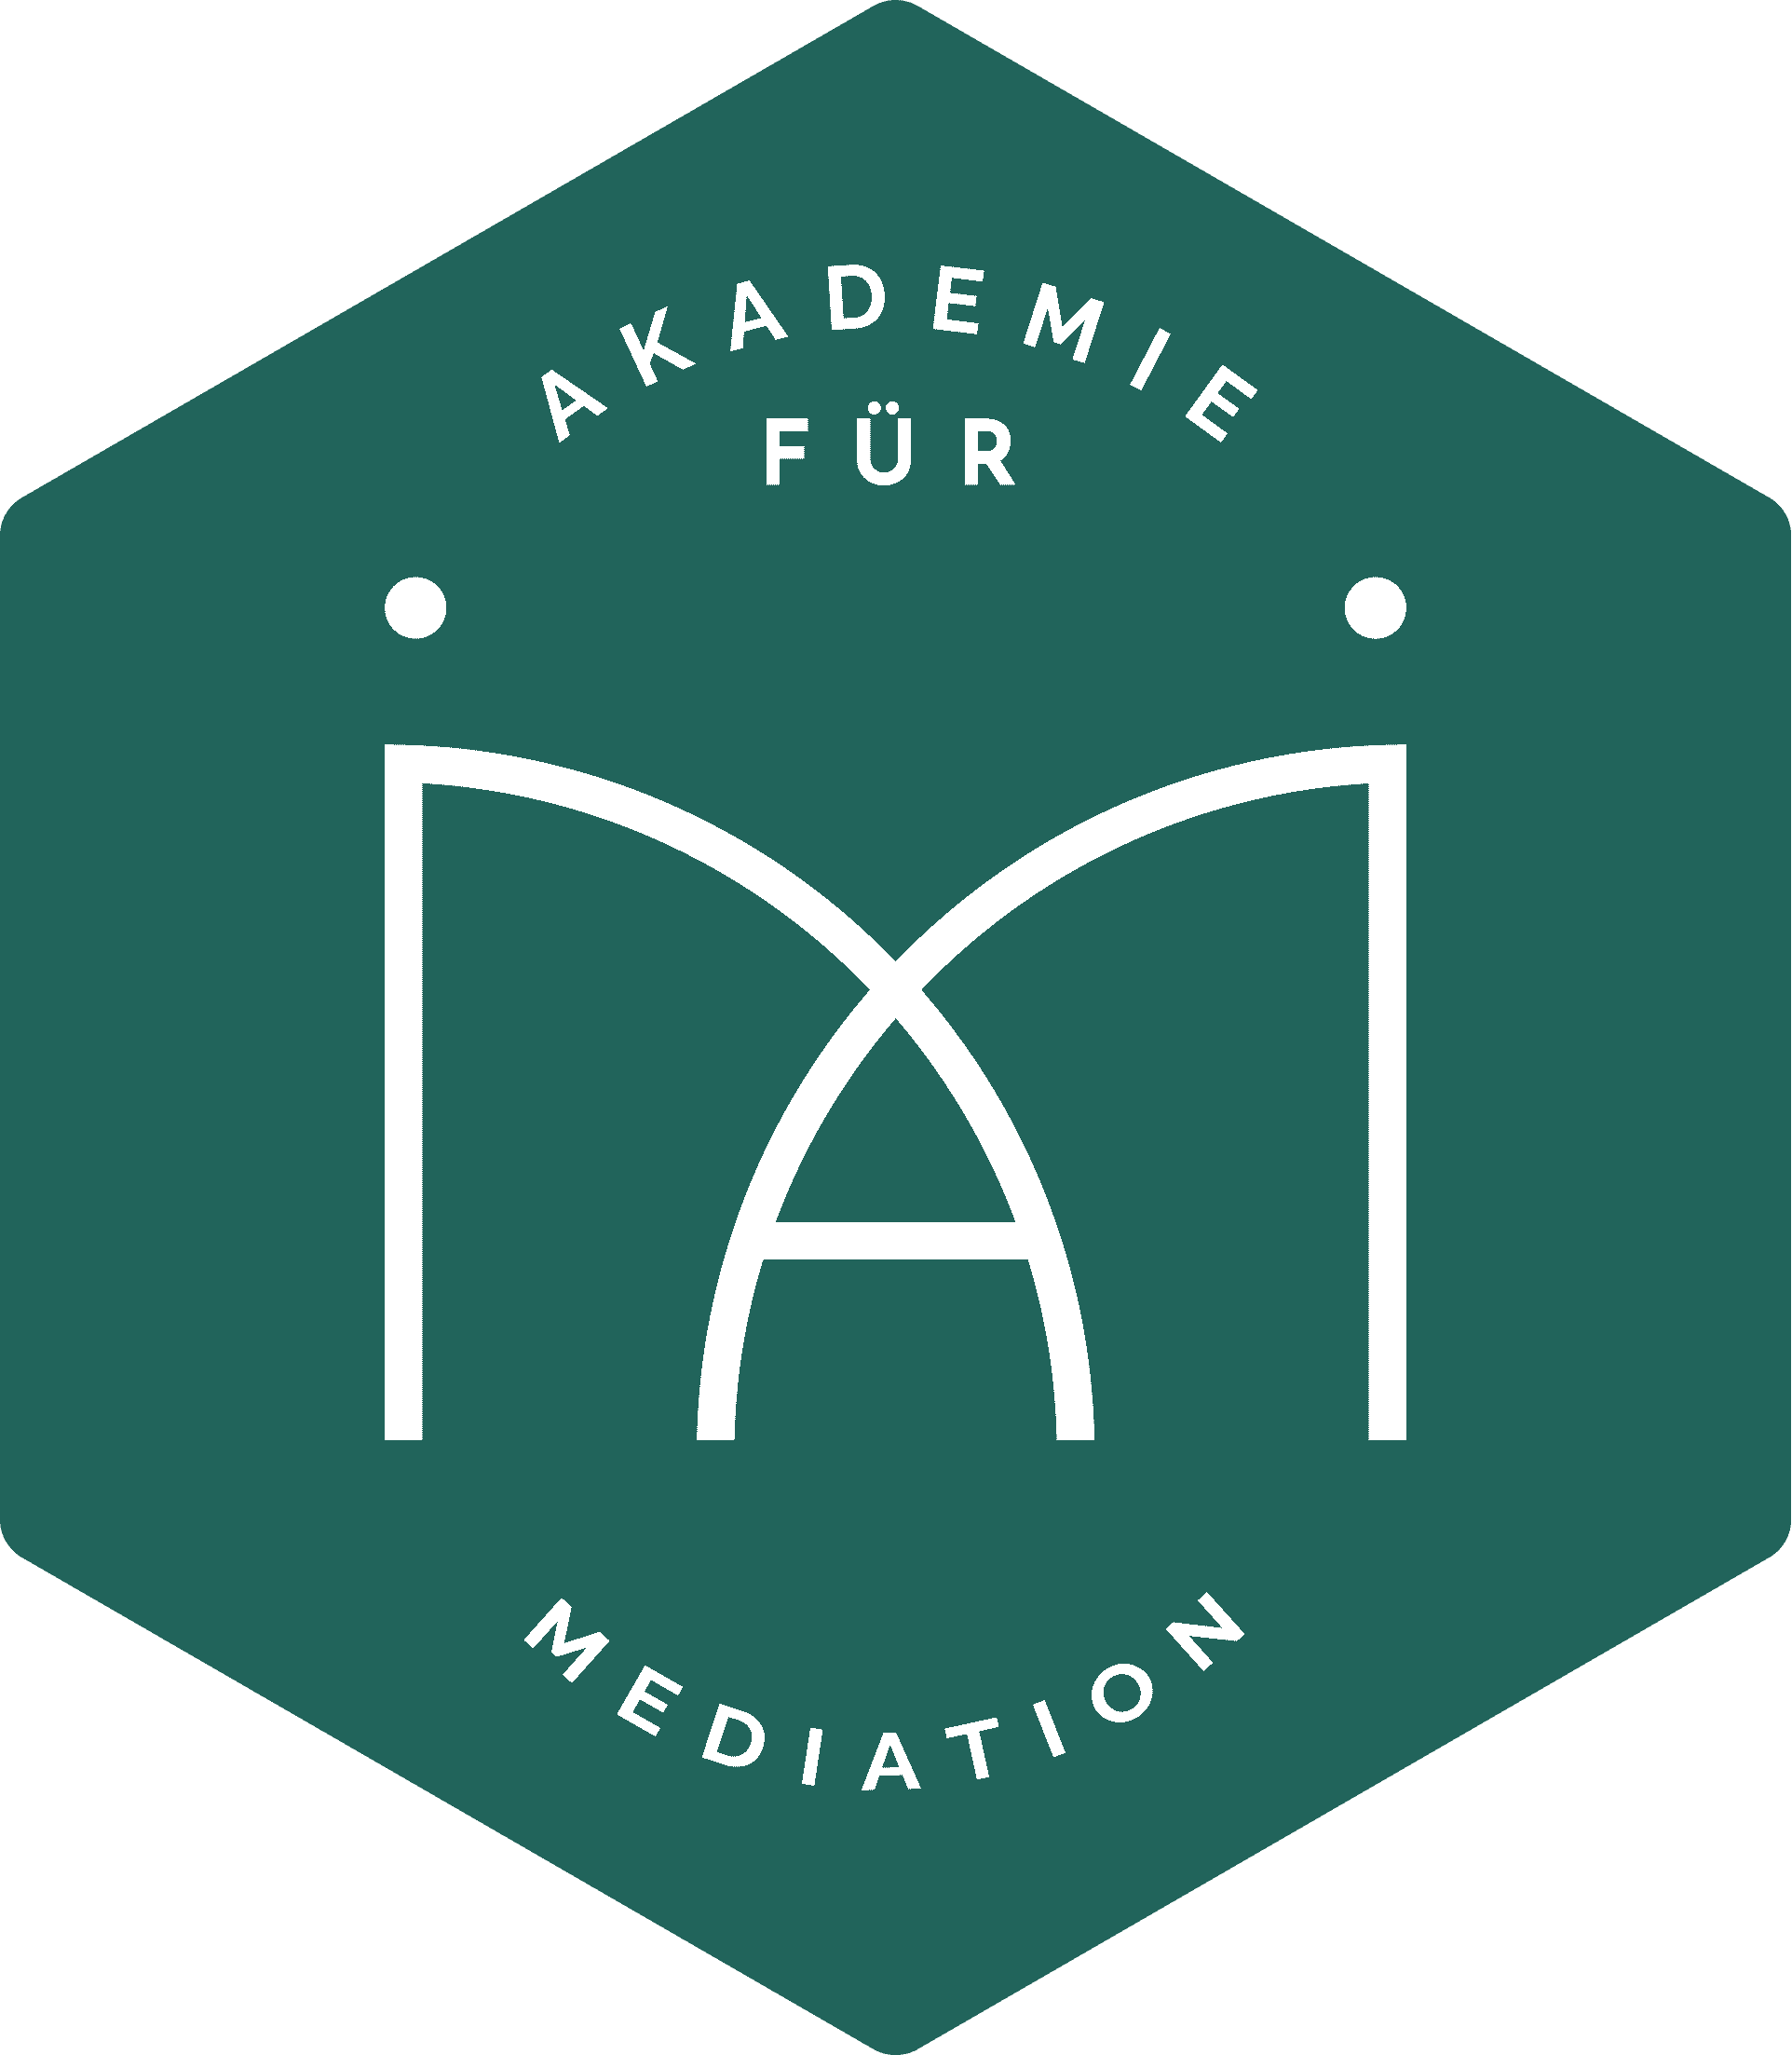 Akadamie für Mediation